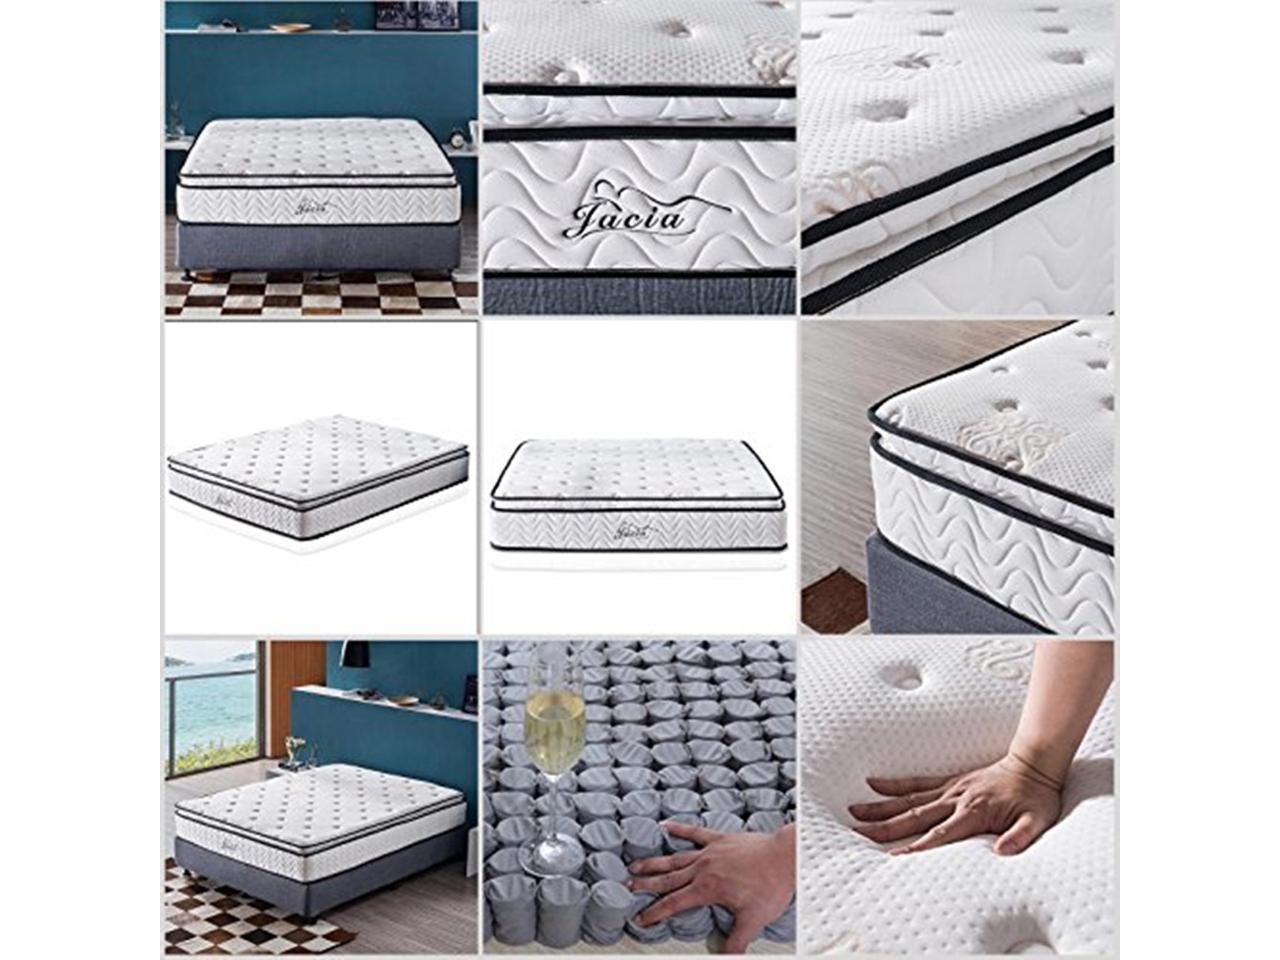 jacia house mattress review